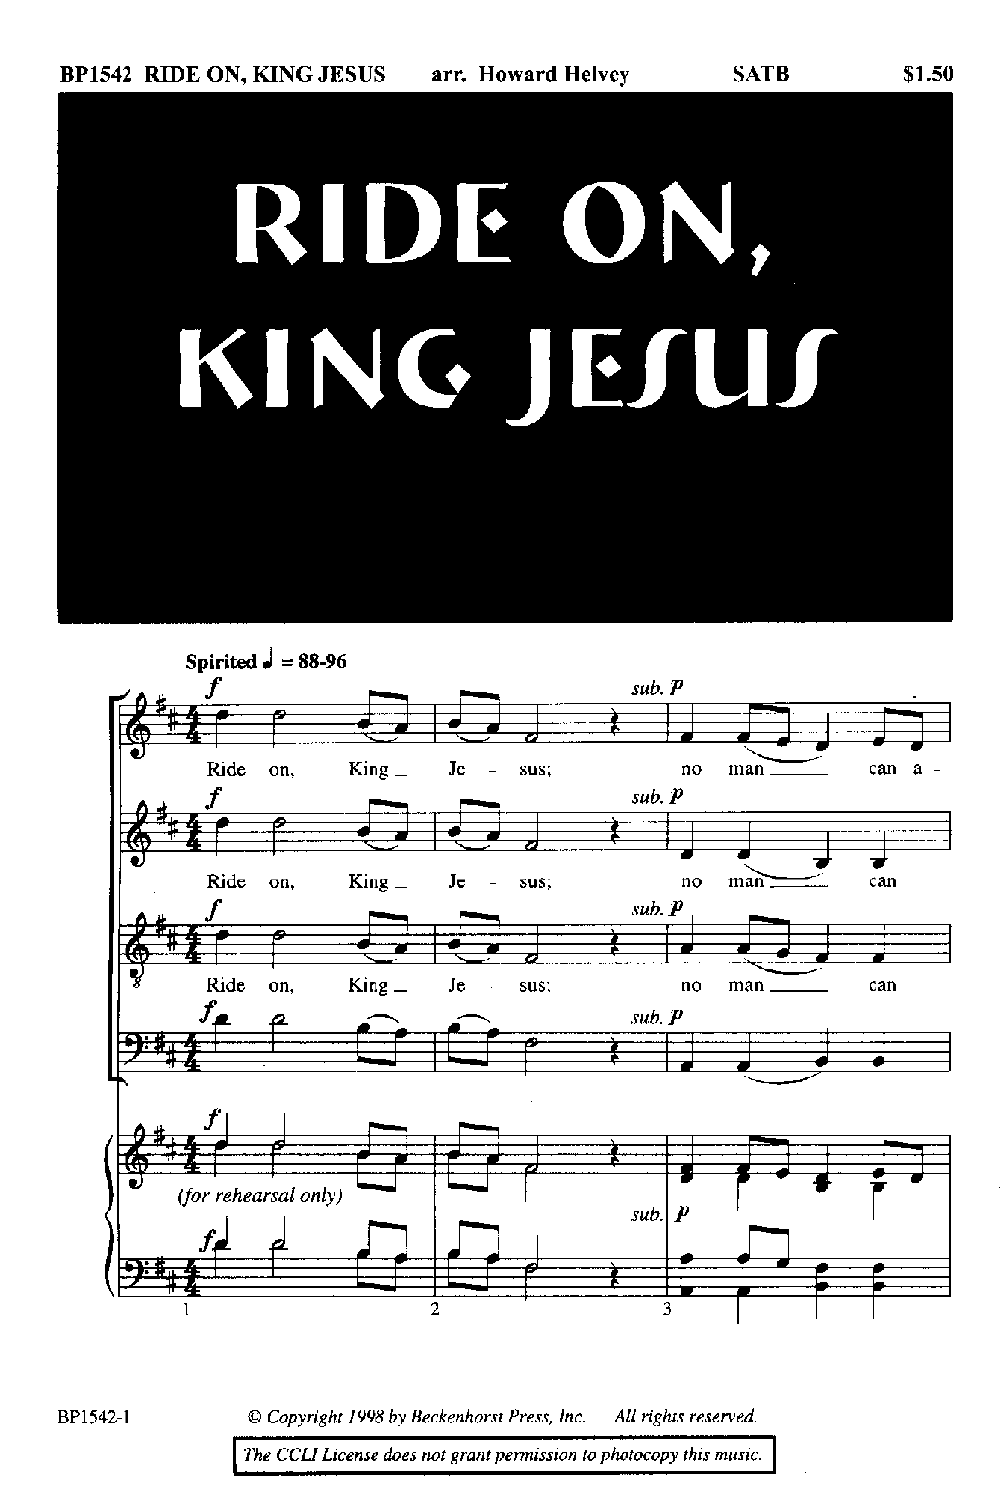 RIDE ON KING JESUS